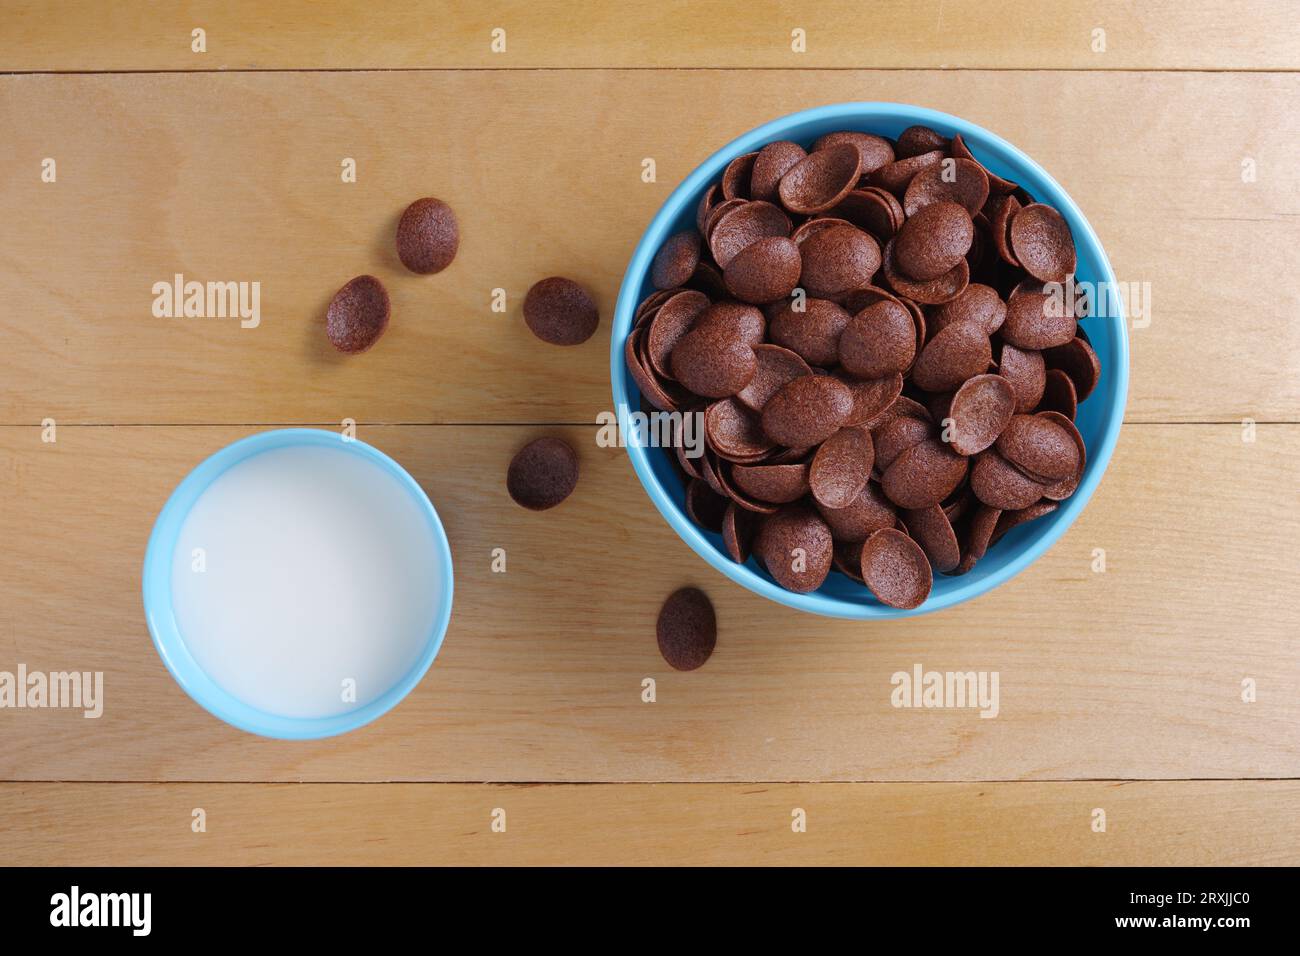 Directamente encima de la vista de los copos de maíz de chocolate en el tazón y el vaso de leche en la mesa de madera. Platos de plástico azul Foto de stock